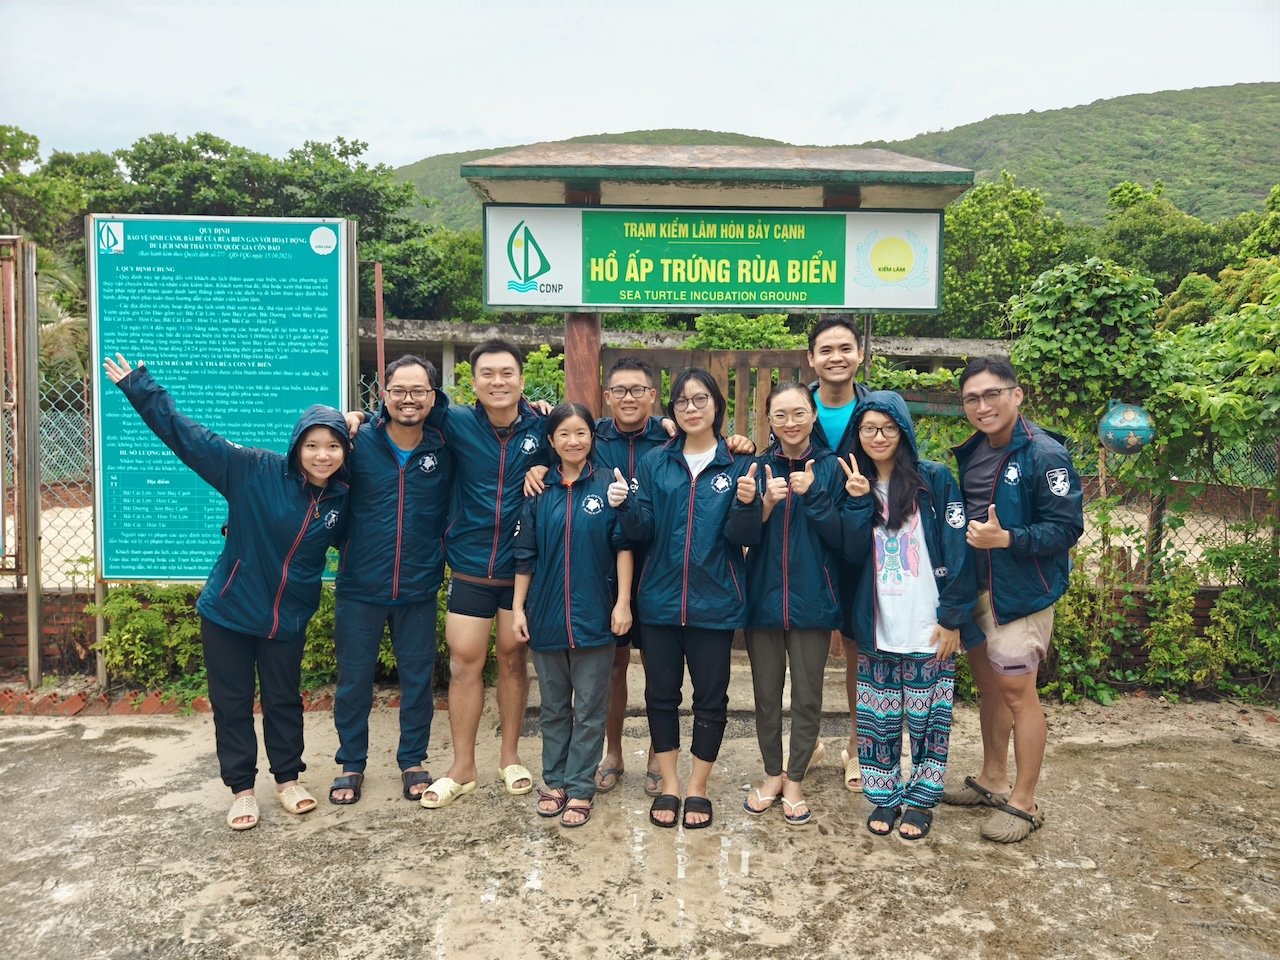 Chị Dương Lệ Quyên (thứ 4 từ trái sang) cùng các tình nguyện viên của tổ chức IUCN tham gia bảo tồn rùa biển tại Côn Đảo